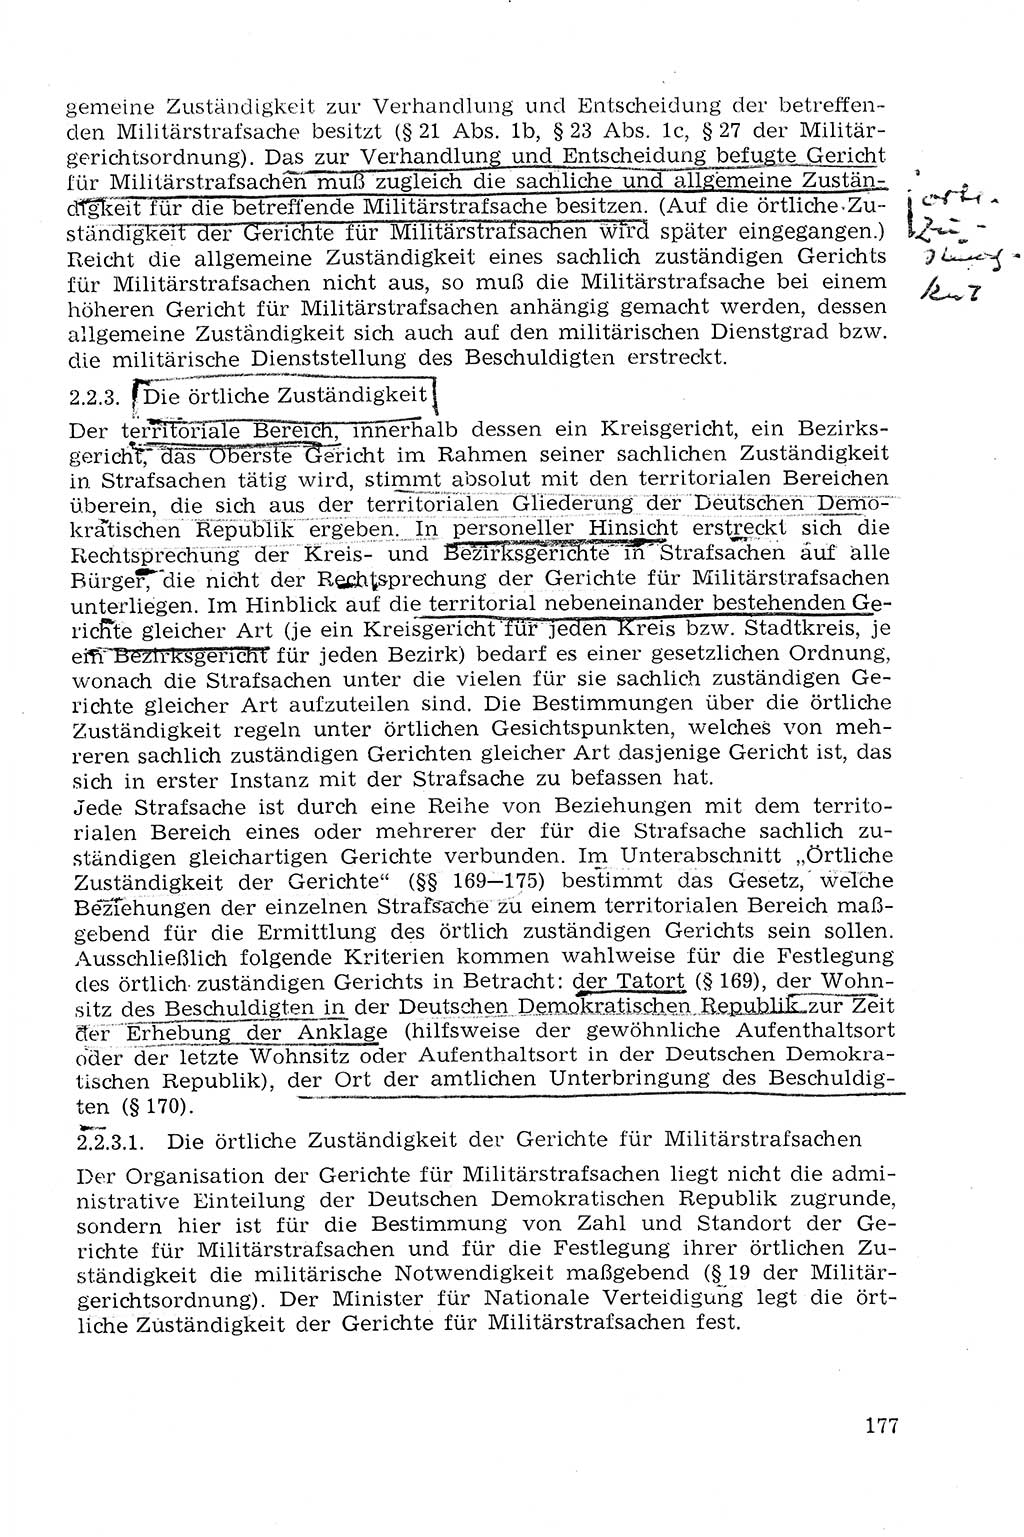 StrafprozeÃŸrecht der DDR (Deutsche Demokratische Republik), Lehrmaterial 1969, Seite 177 (StrafprozeÃŸr. DDR Lehrmat. 1969, S. 177)